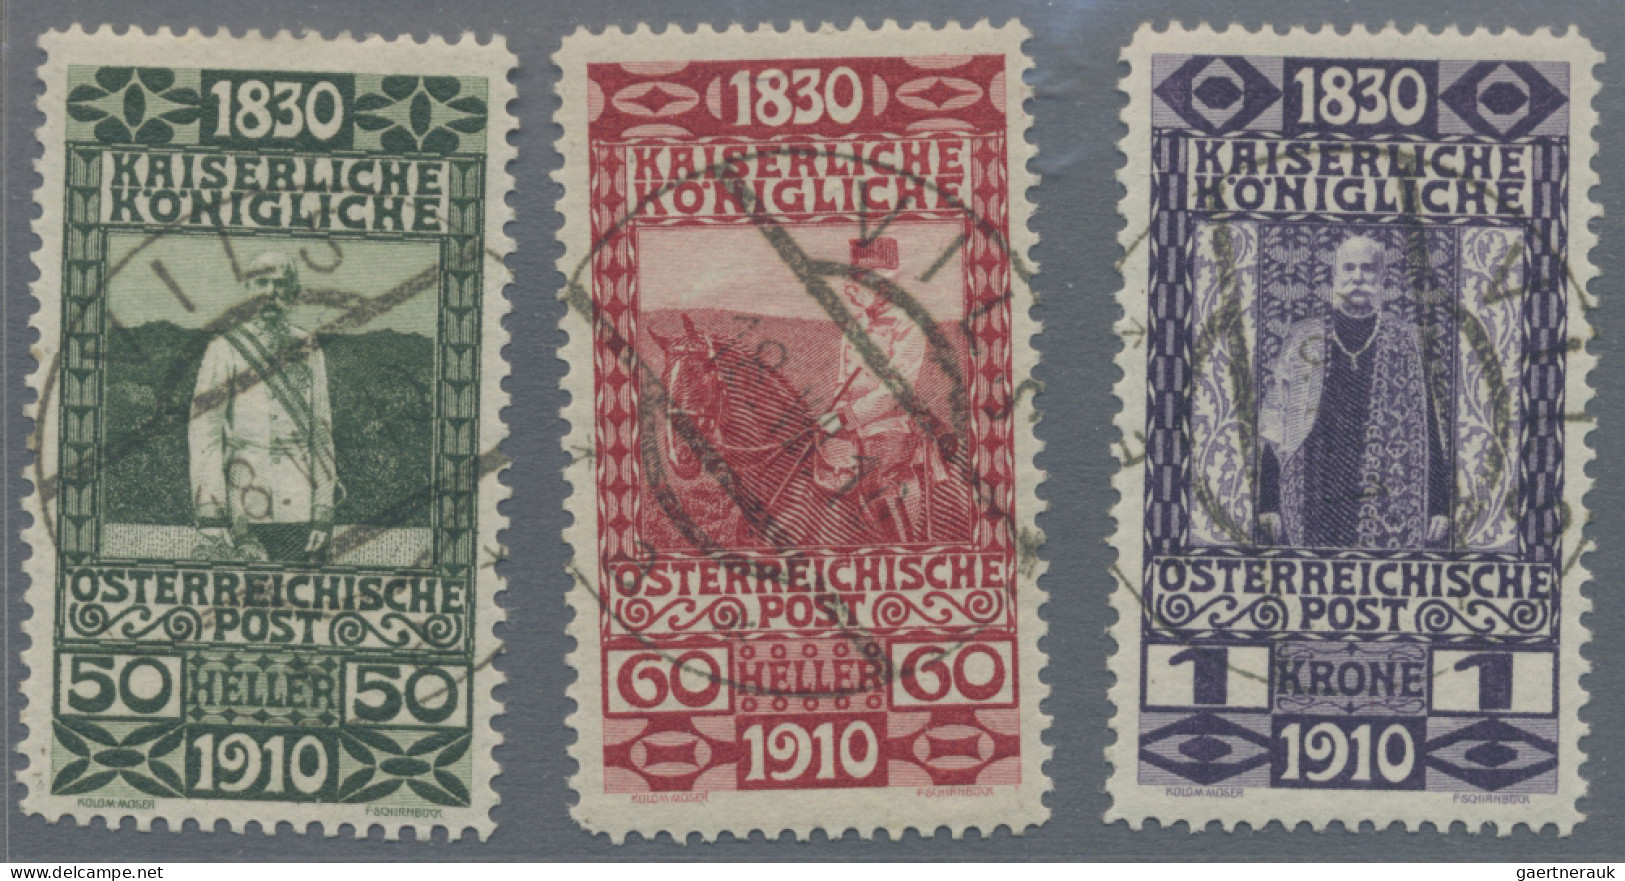 Europe: 1893/1934, nette Partie mit u.a. Österreich MiNr. 161/173 mit Ersttagsst